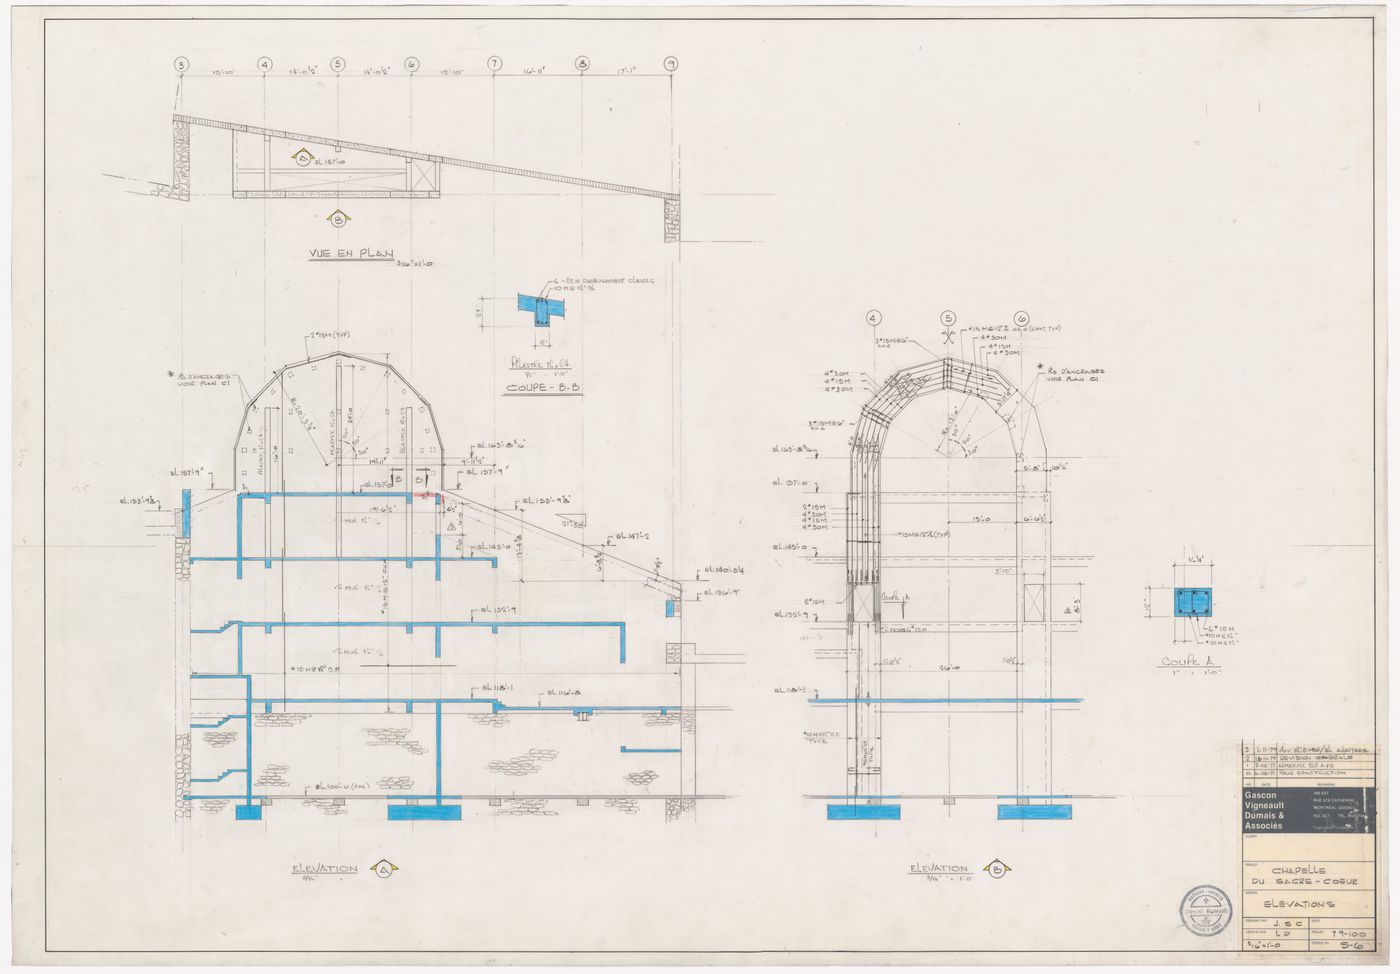 Plan and elevations for the reconstruction of the Chapelle du Sacré-Coeur, Notre-Dame de Montréal